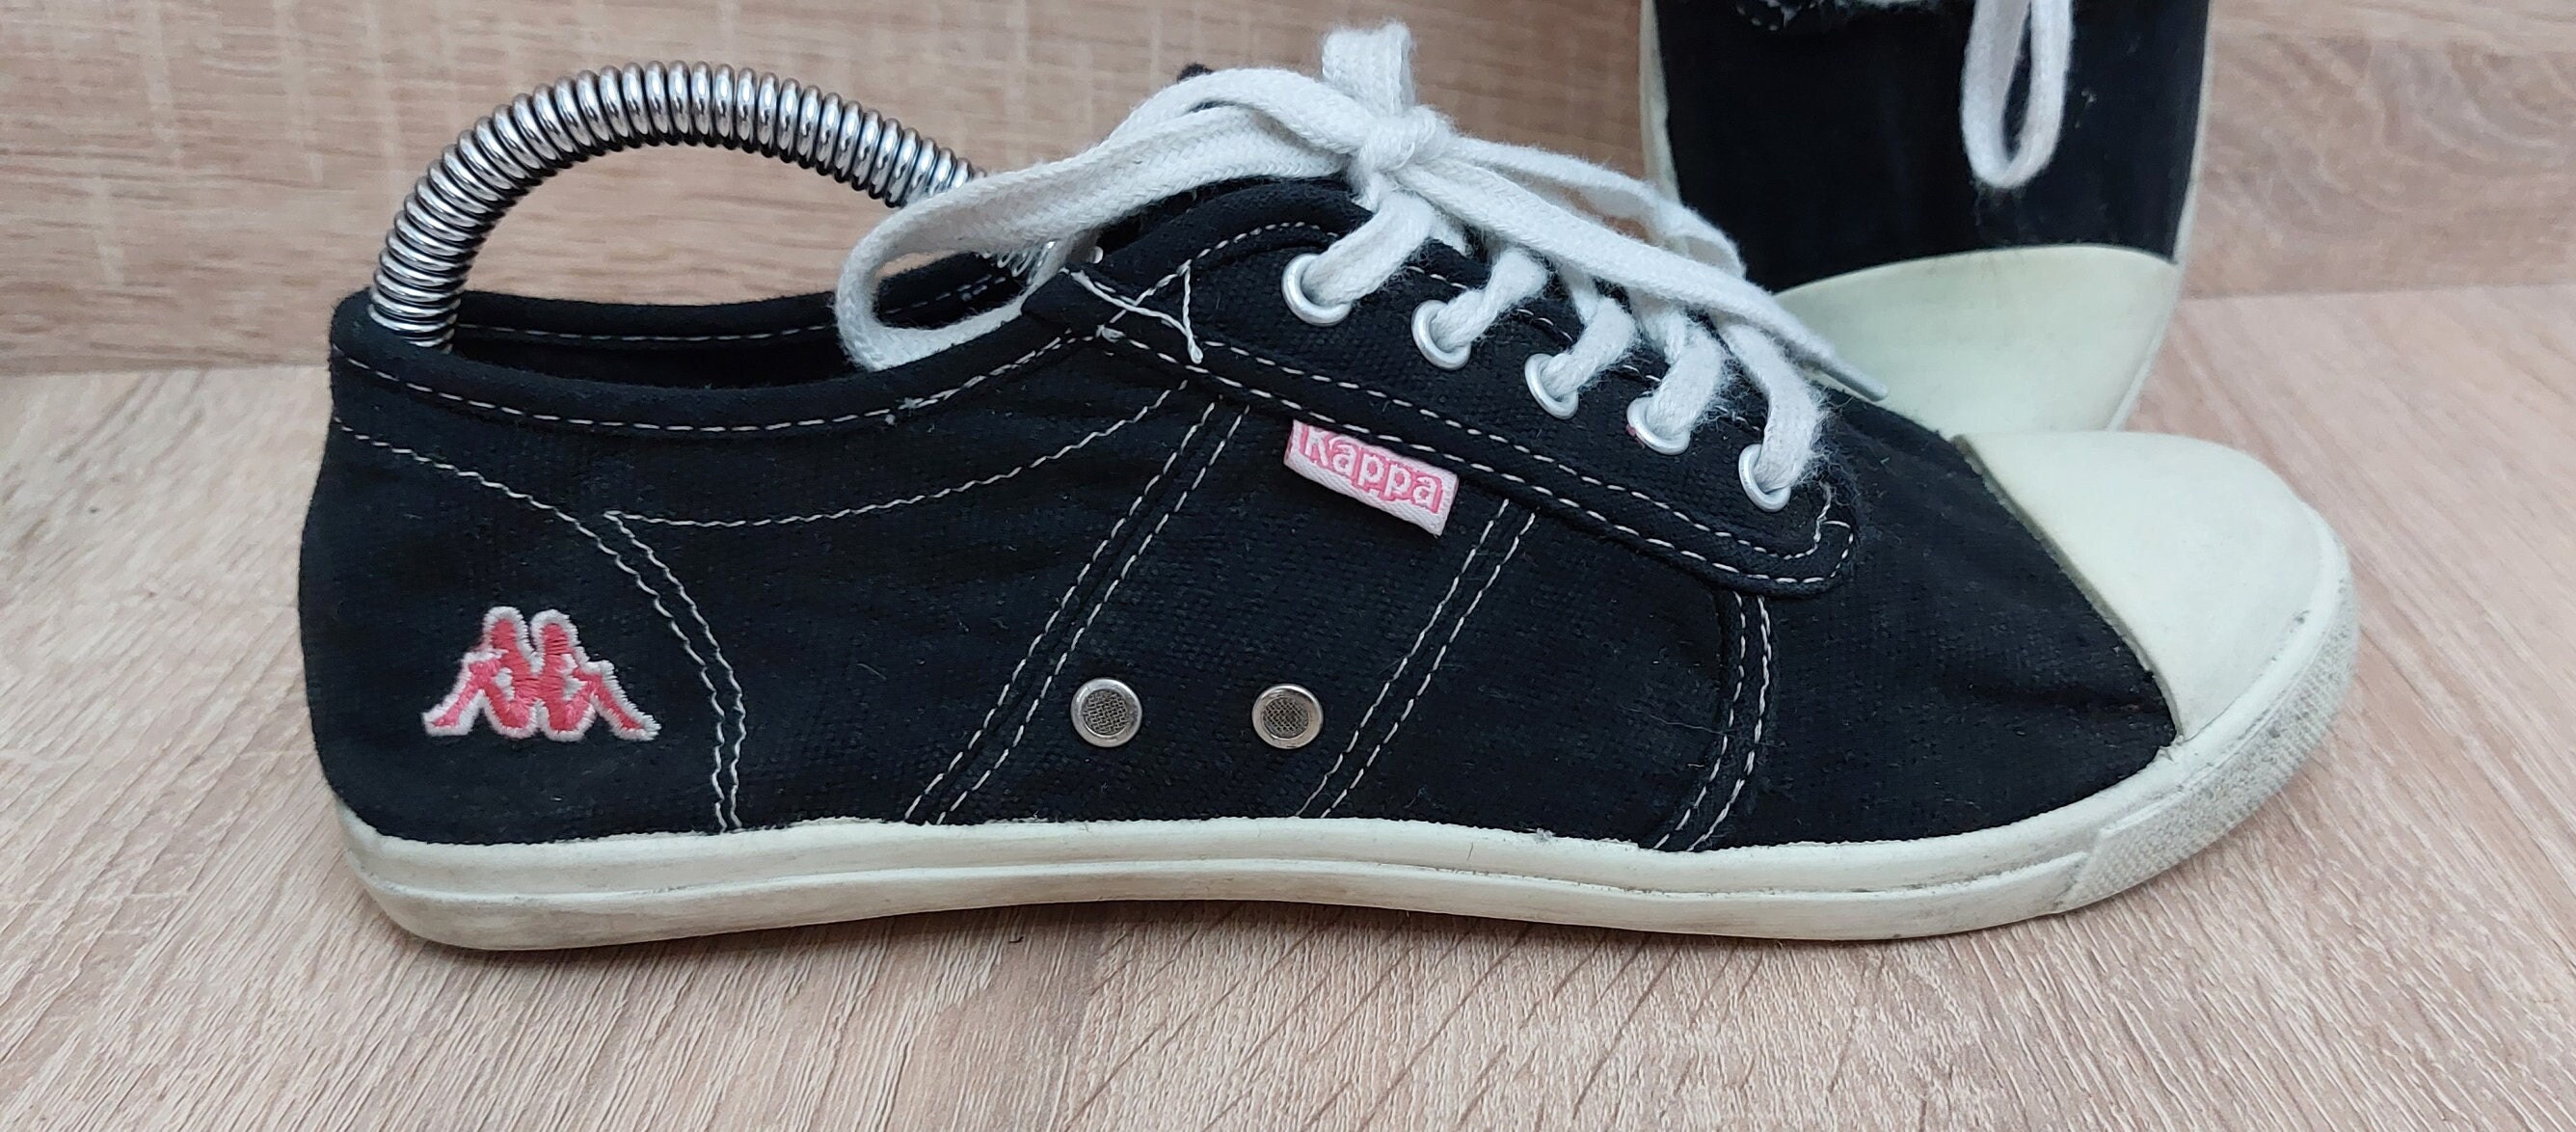 Vintage 90s Kappa Sneakers Size: US 7/ 6 UK/ 39.5 EUR/ Antique Kappa Shoes/  Retro Kappa Shoe Sneakers - Etsy